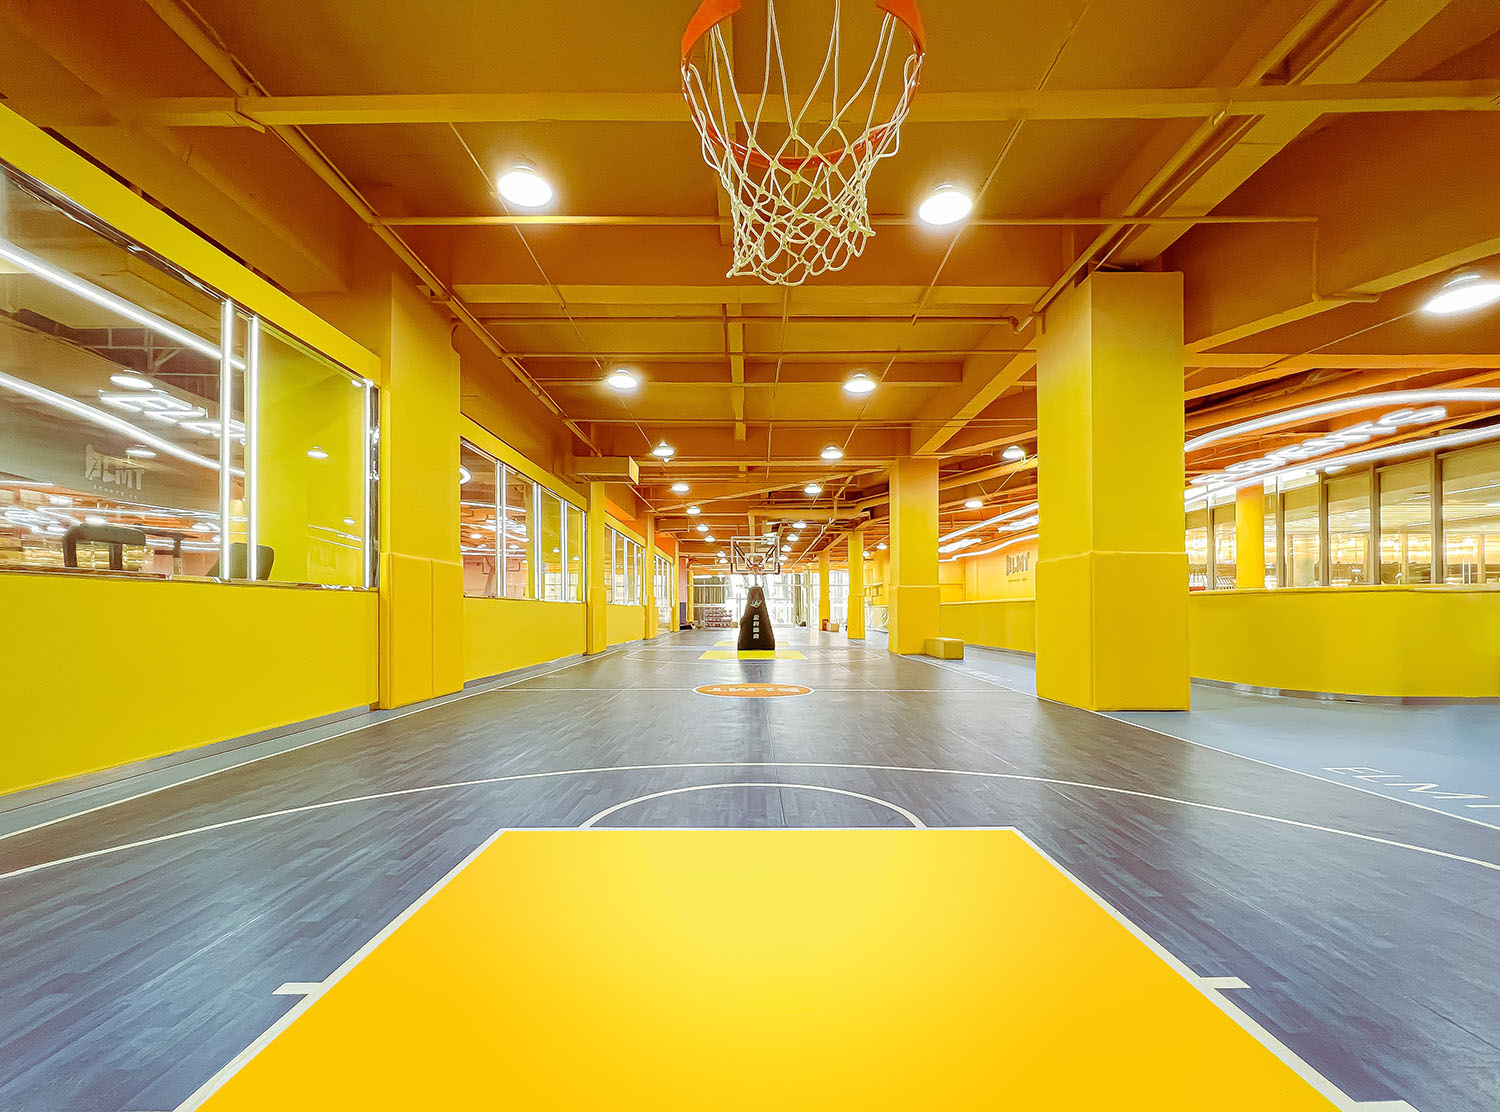 室內運動空間,籃球場設計,籃球館設計,室內籃球場設計,運動空間設計,昆明元素體育海樂世界3.0,昆明,平介設計,楊楠